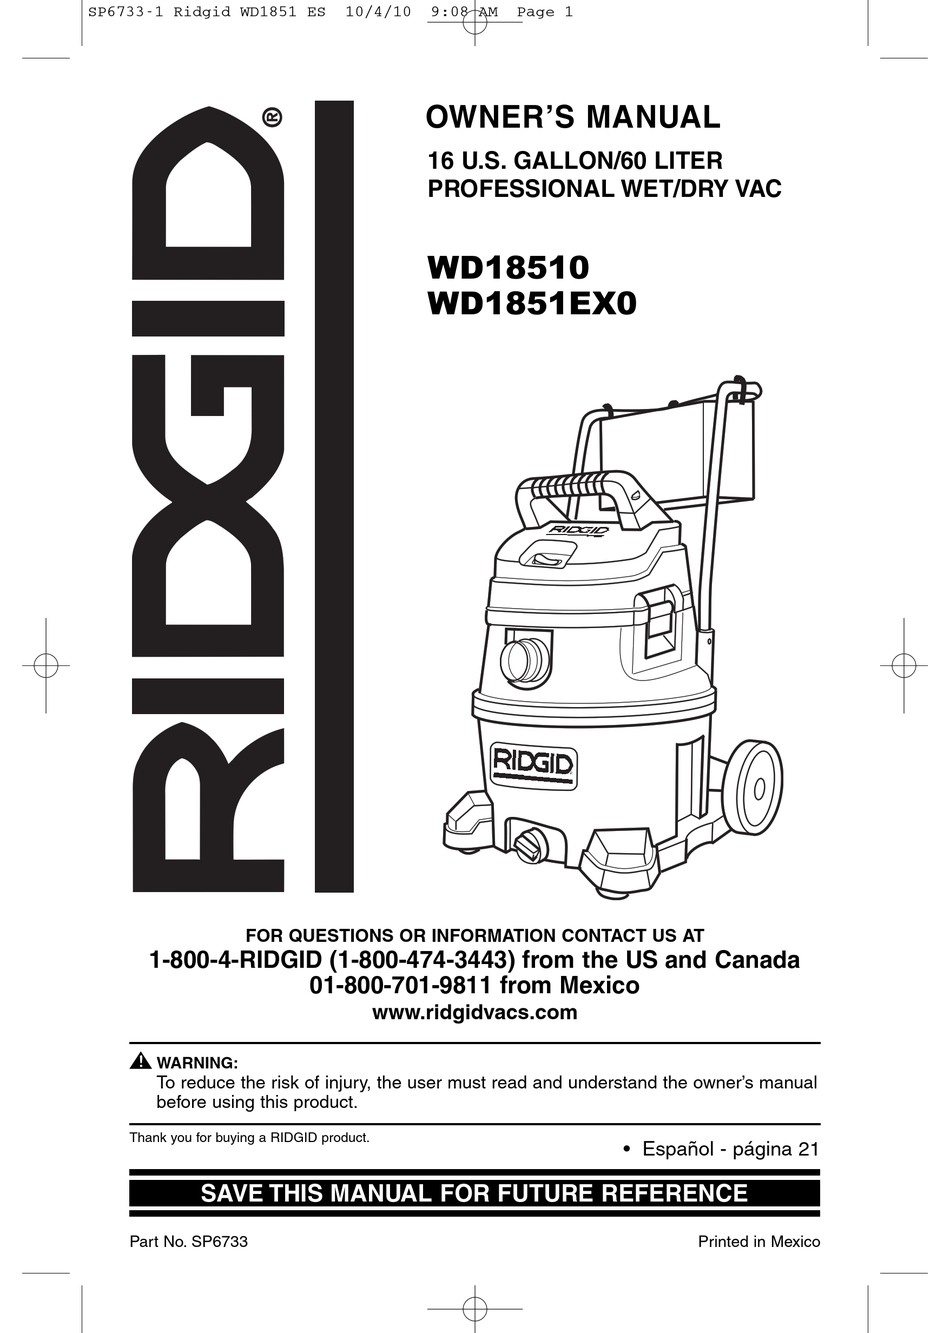 RIDGID WD18510 OWNER'S MANUAL Pdf Download | ManualsLib